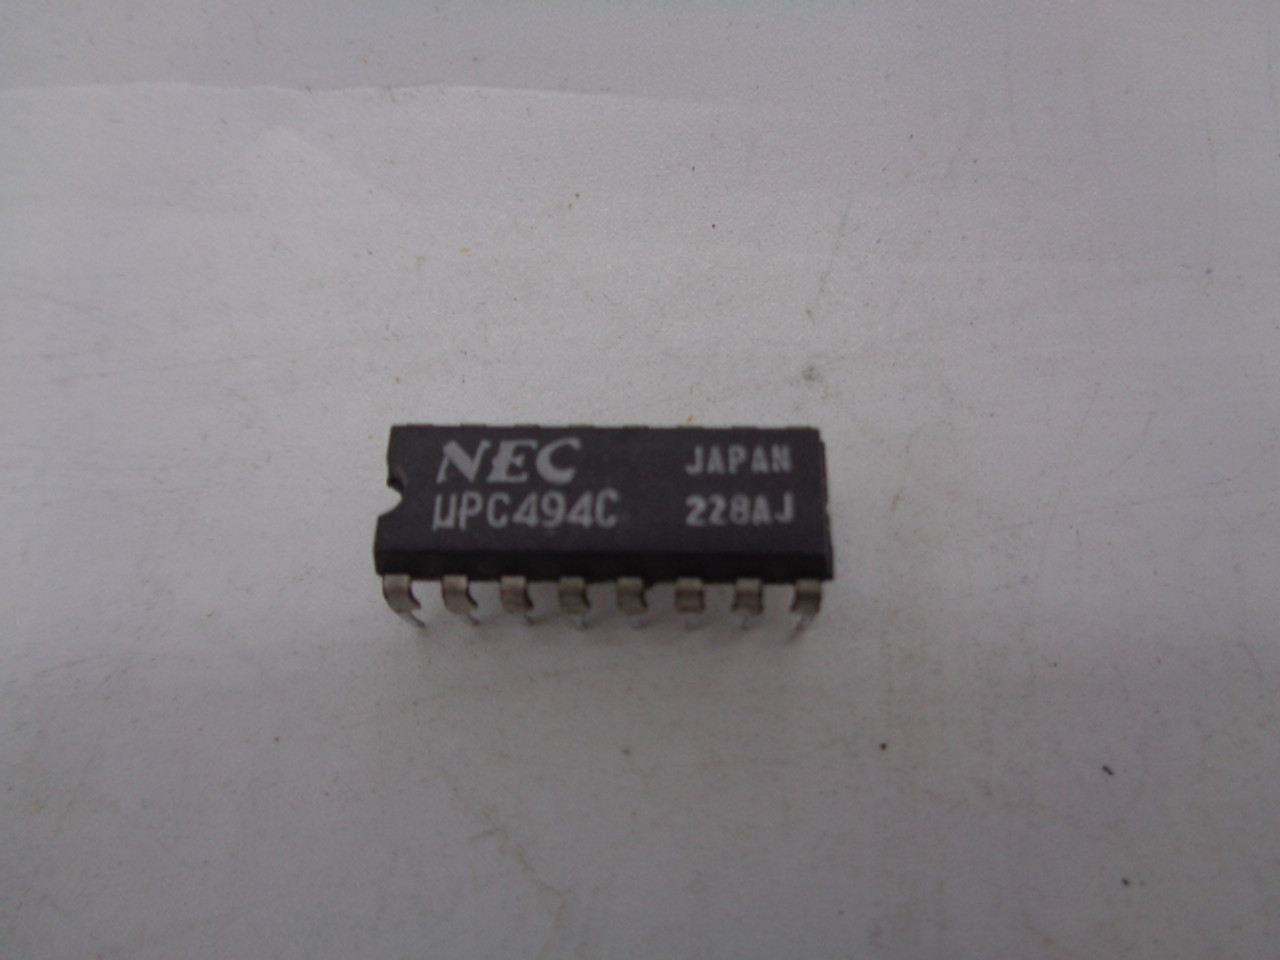 (10) NEC UPC494C 223 AU DIP16 Switching Controllers